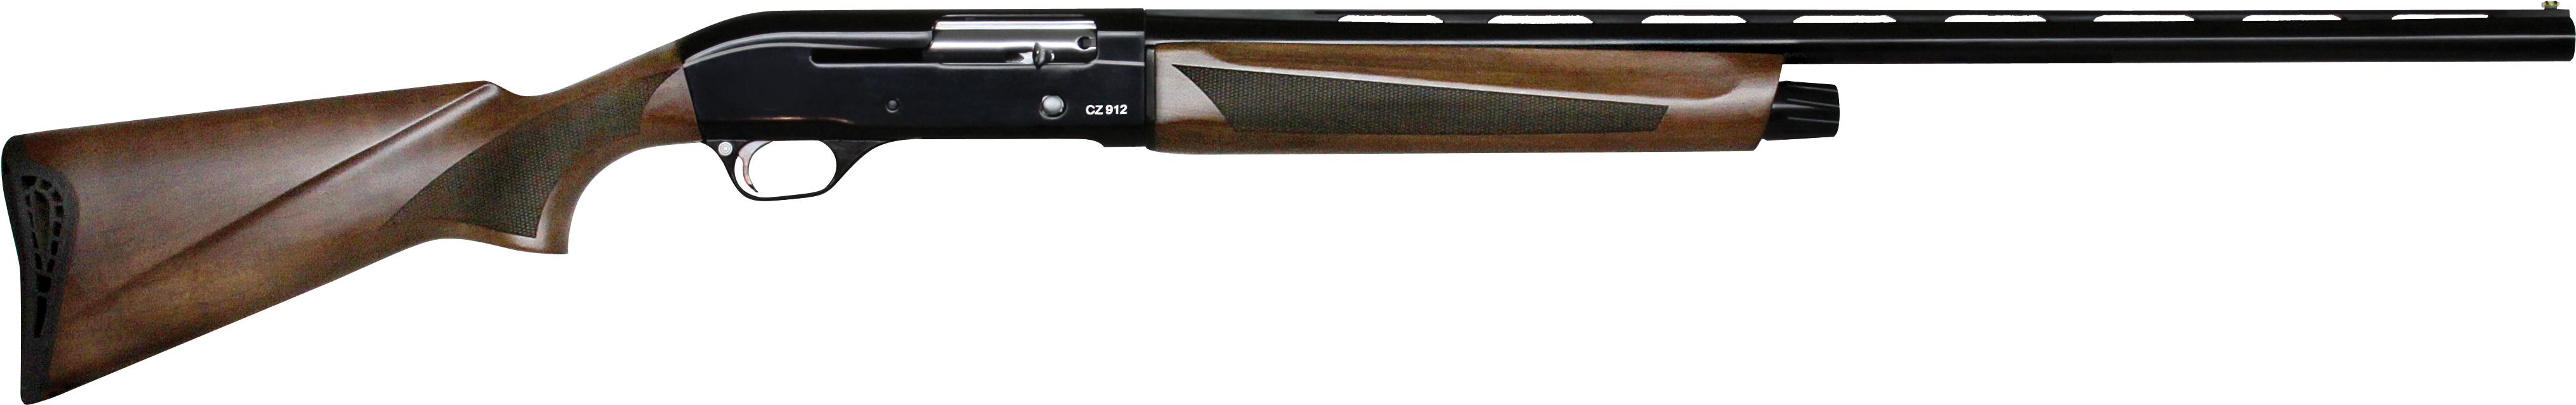 Previous - Next - Cz 912 Shotgun (4208x2805), Png Download